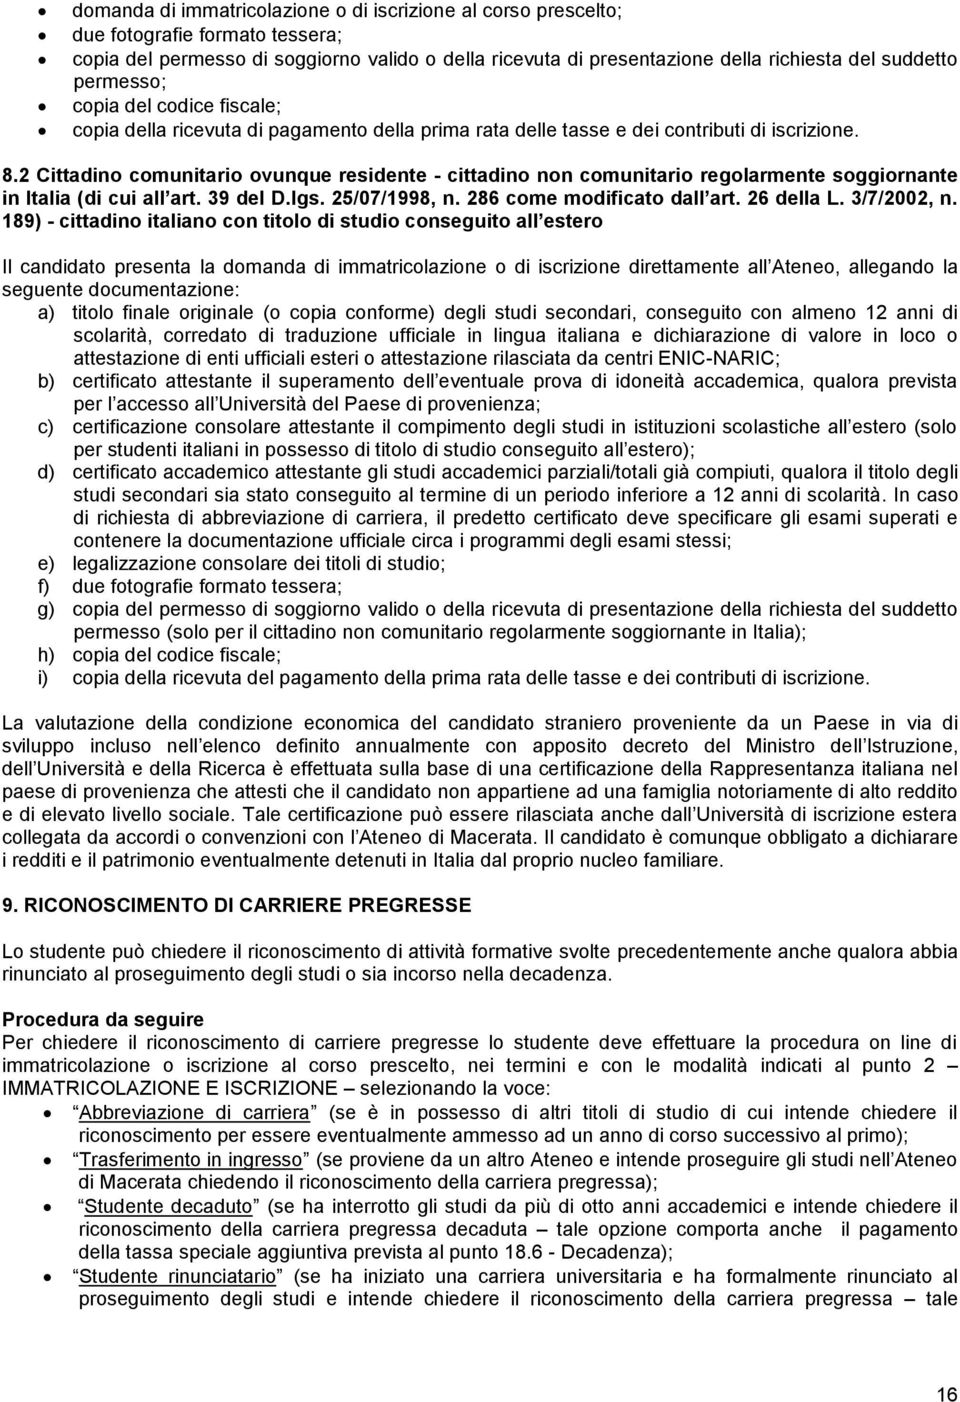 2 Cittadino comunitario ovunque residente - cittadino non comunitario regolarmente soggiornante in Italia (di cui all art. 39 del D.lgs. 25/07/1998, n. 286 come modificato dall art. 26 della L.